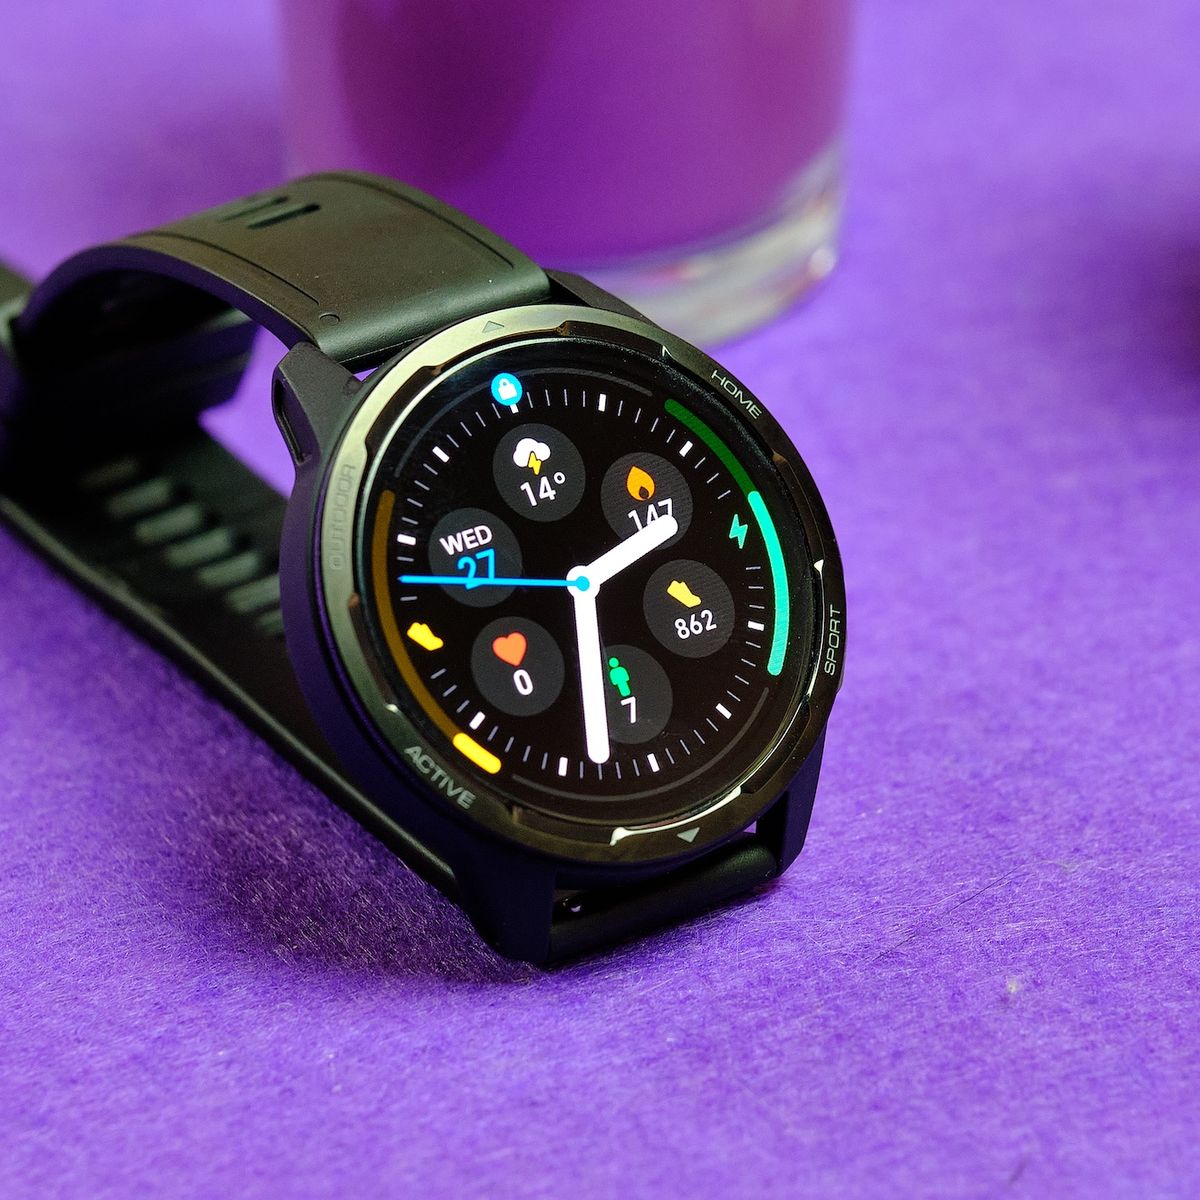 El nuevo reloj inteligente de Xiaomi se ha filtrado: Xiaomi Watch Active S1